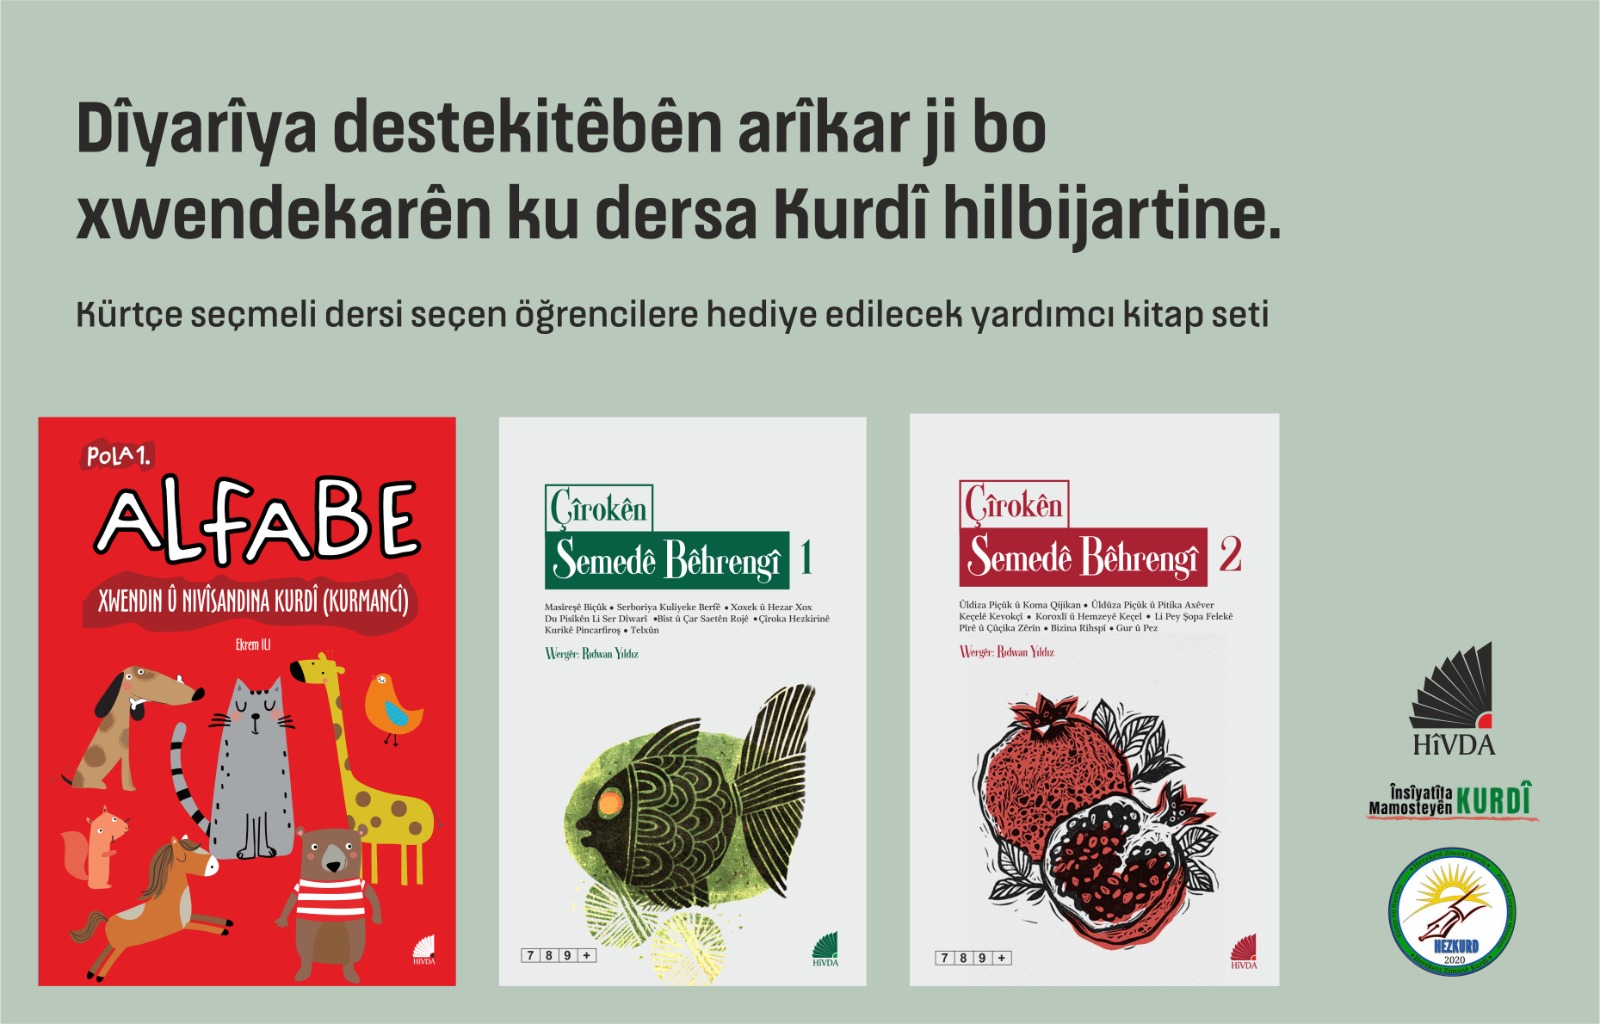 Hivda İleteşim'dün Kürtçe seçmeli derslere destek: Zazaca ve Kürtçe 7000 kitap dağıtacak